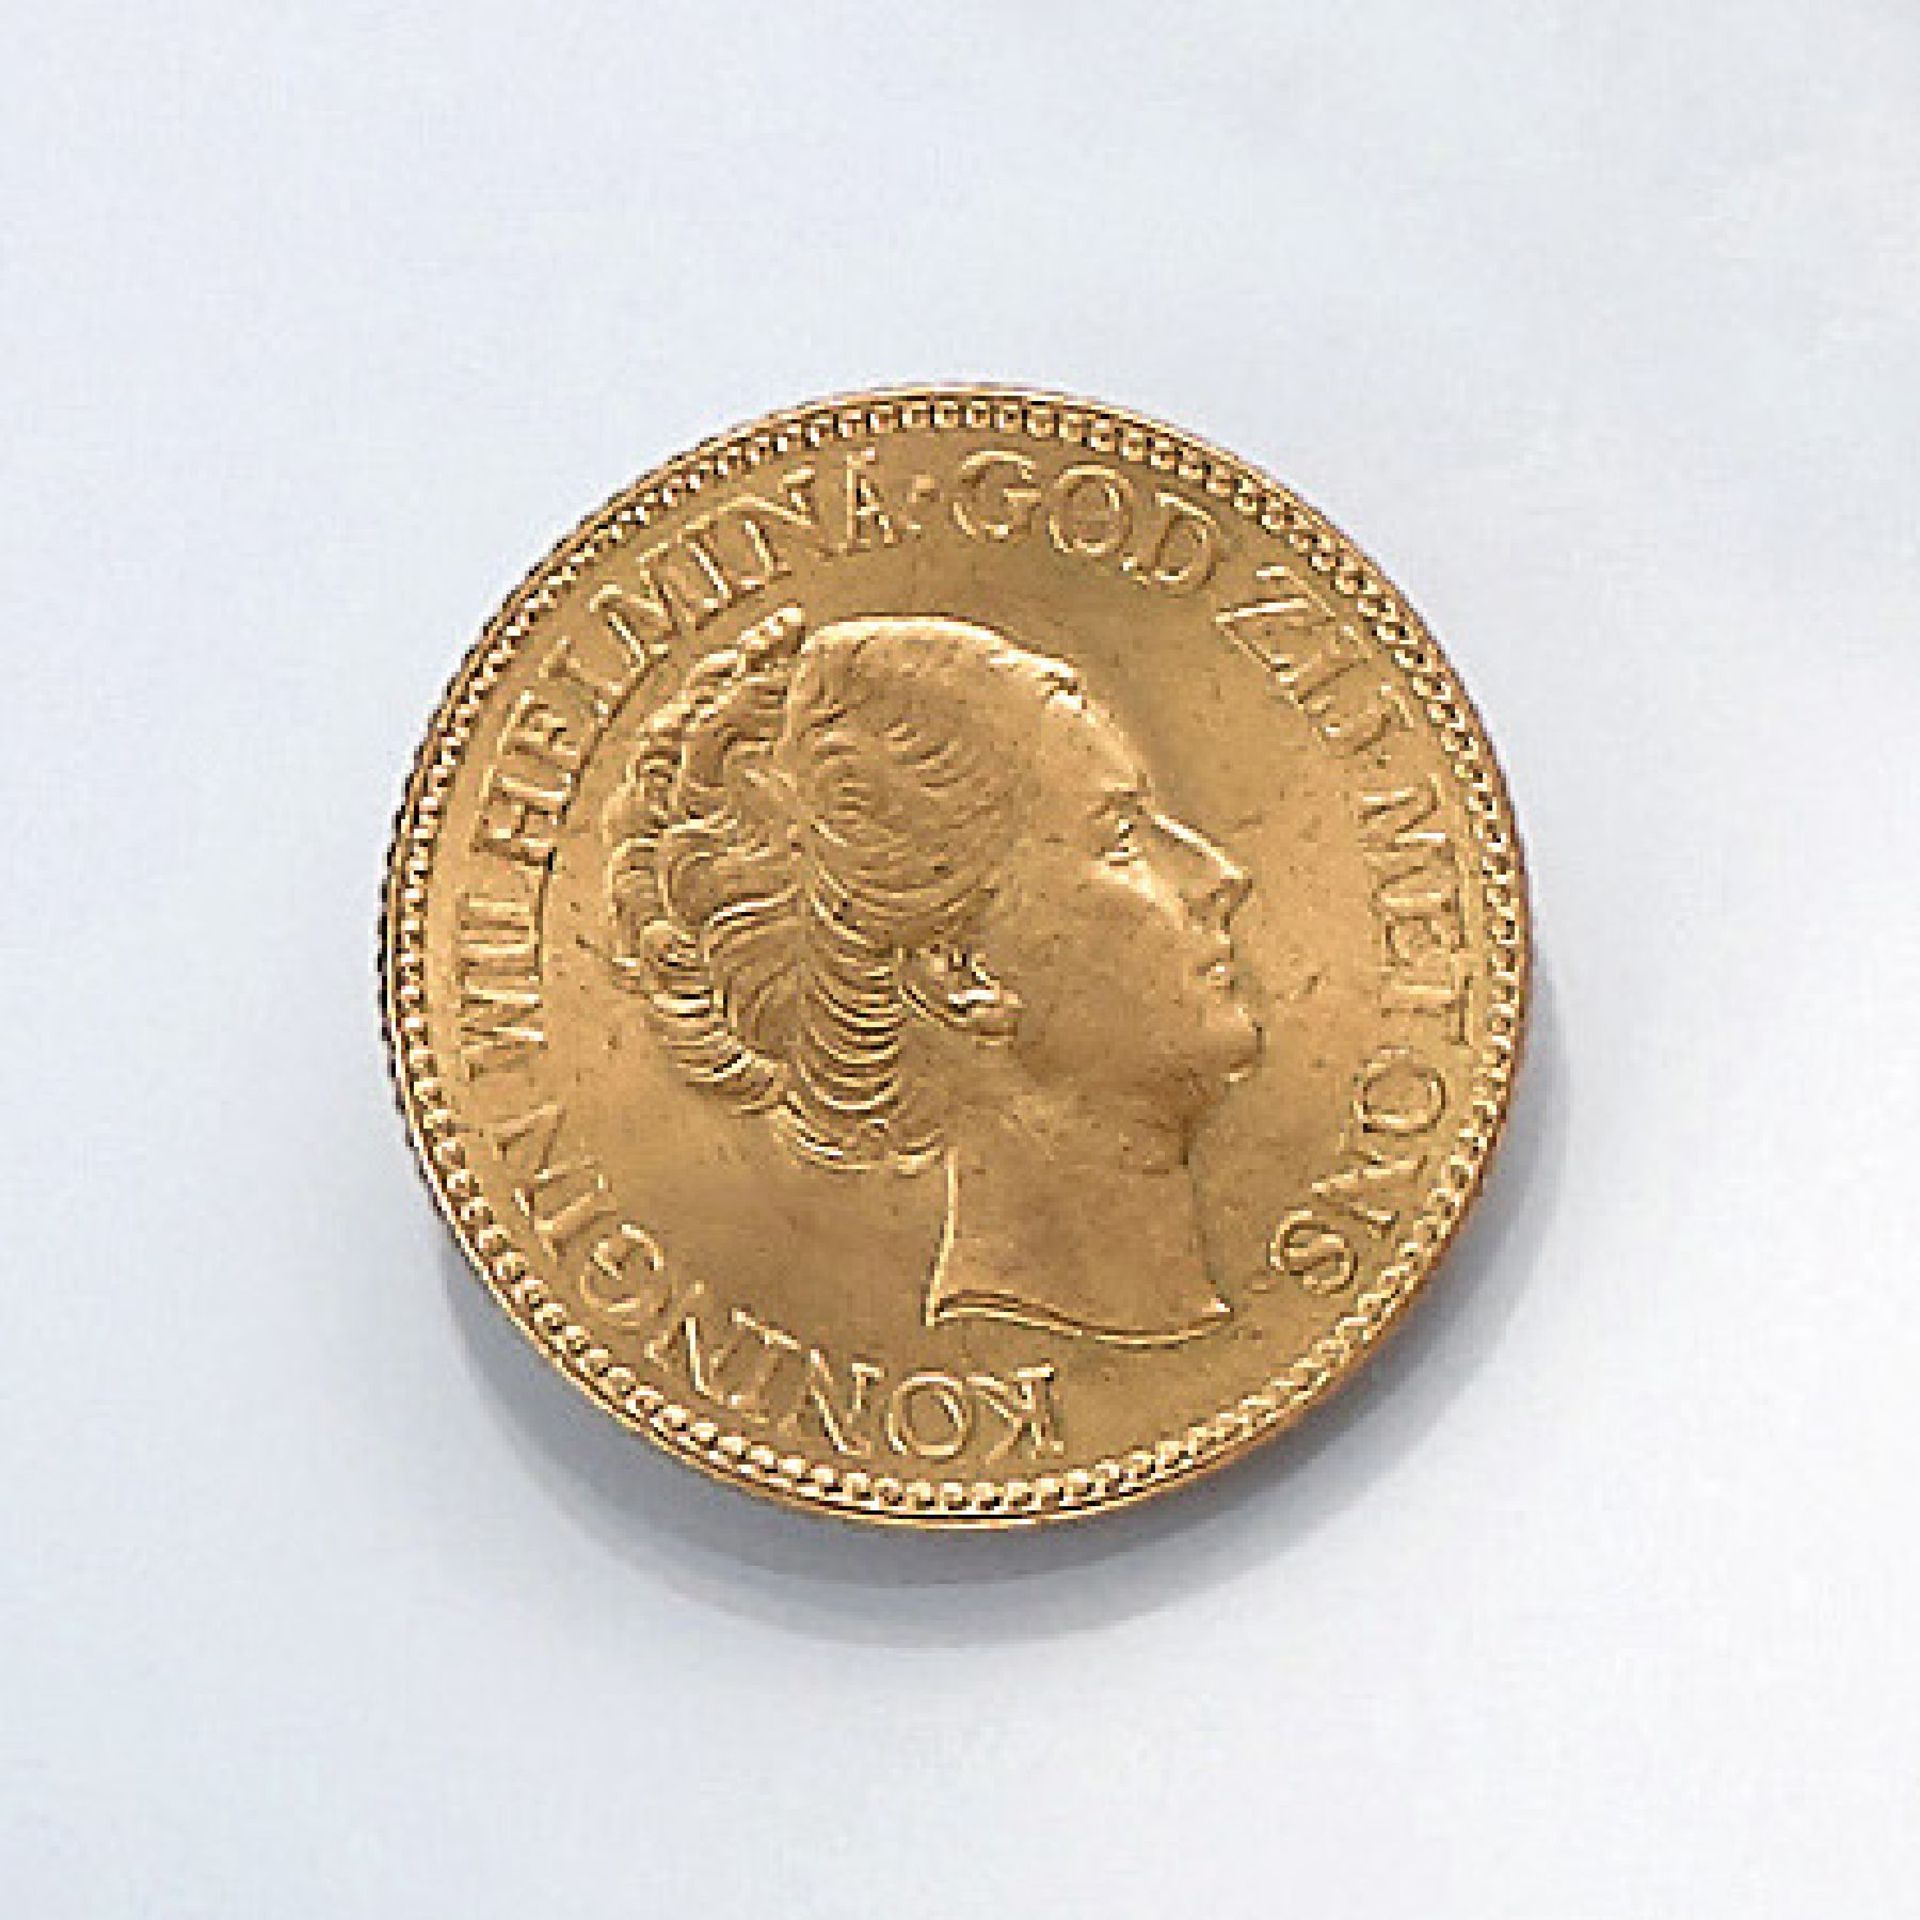 Goldmünze, 10 Gulden, Niederlande, 1933, Koningin Wilhelmina, God zij met ons, Koningrijk der